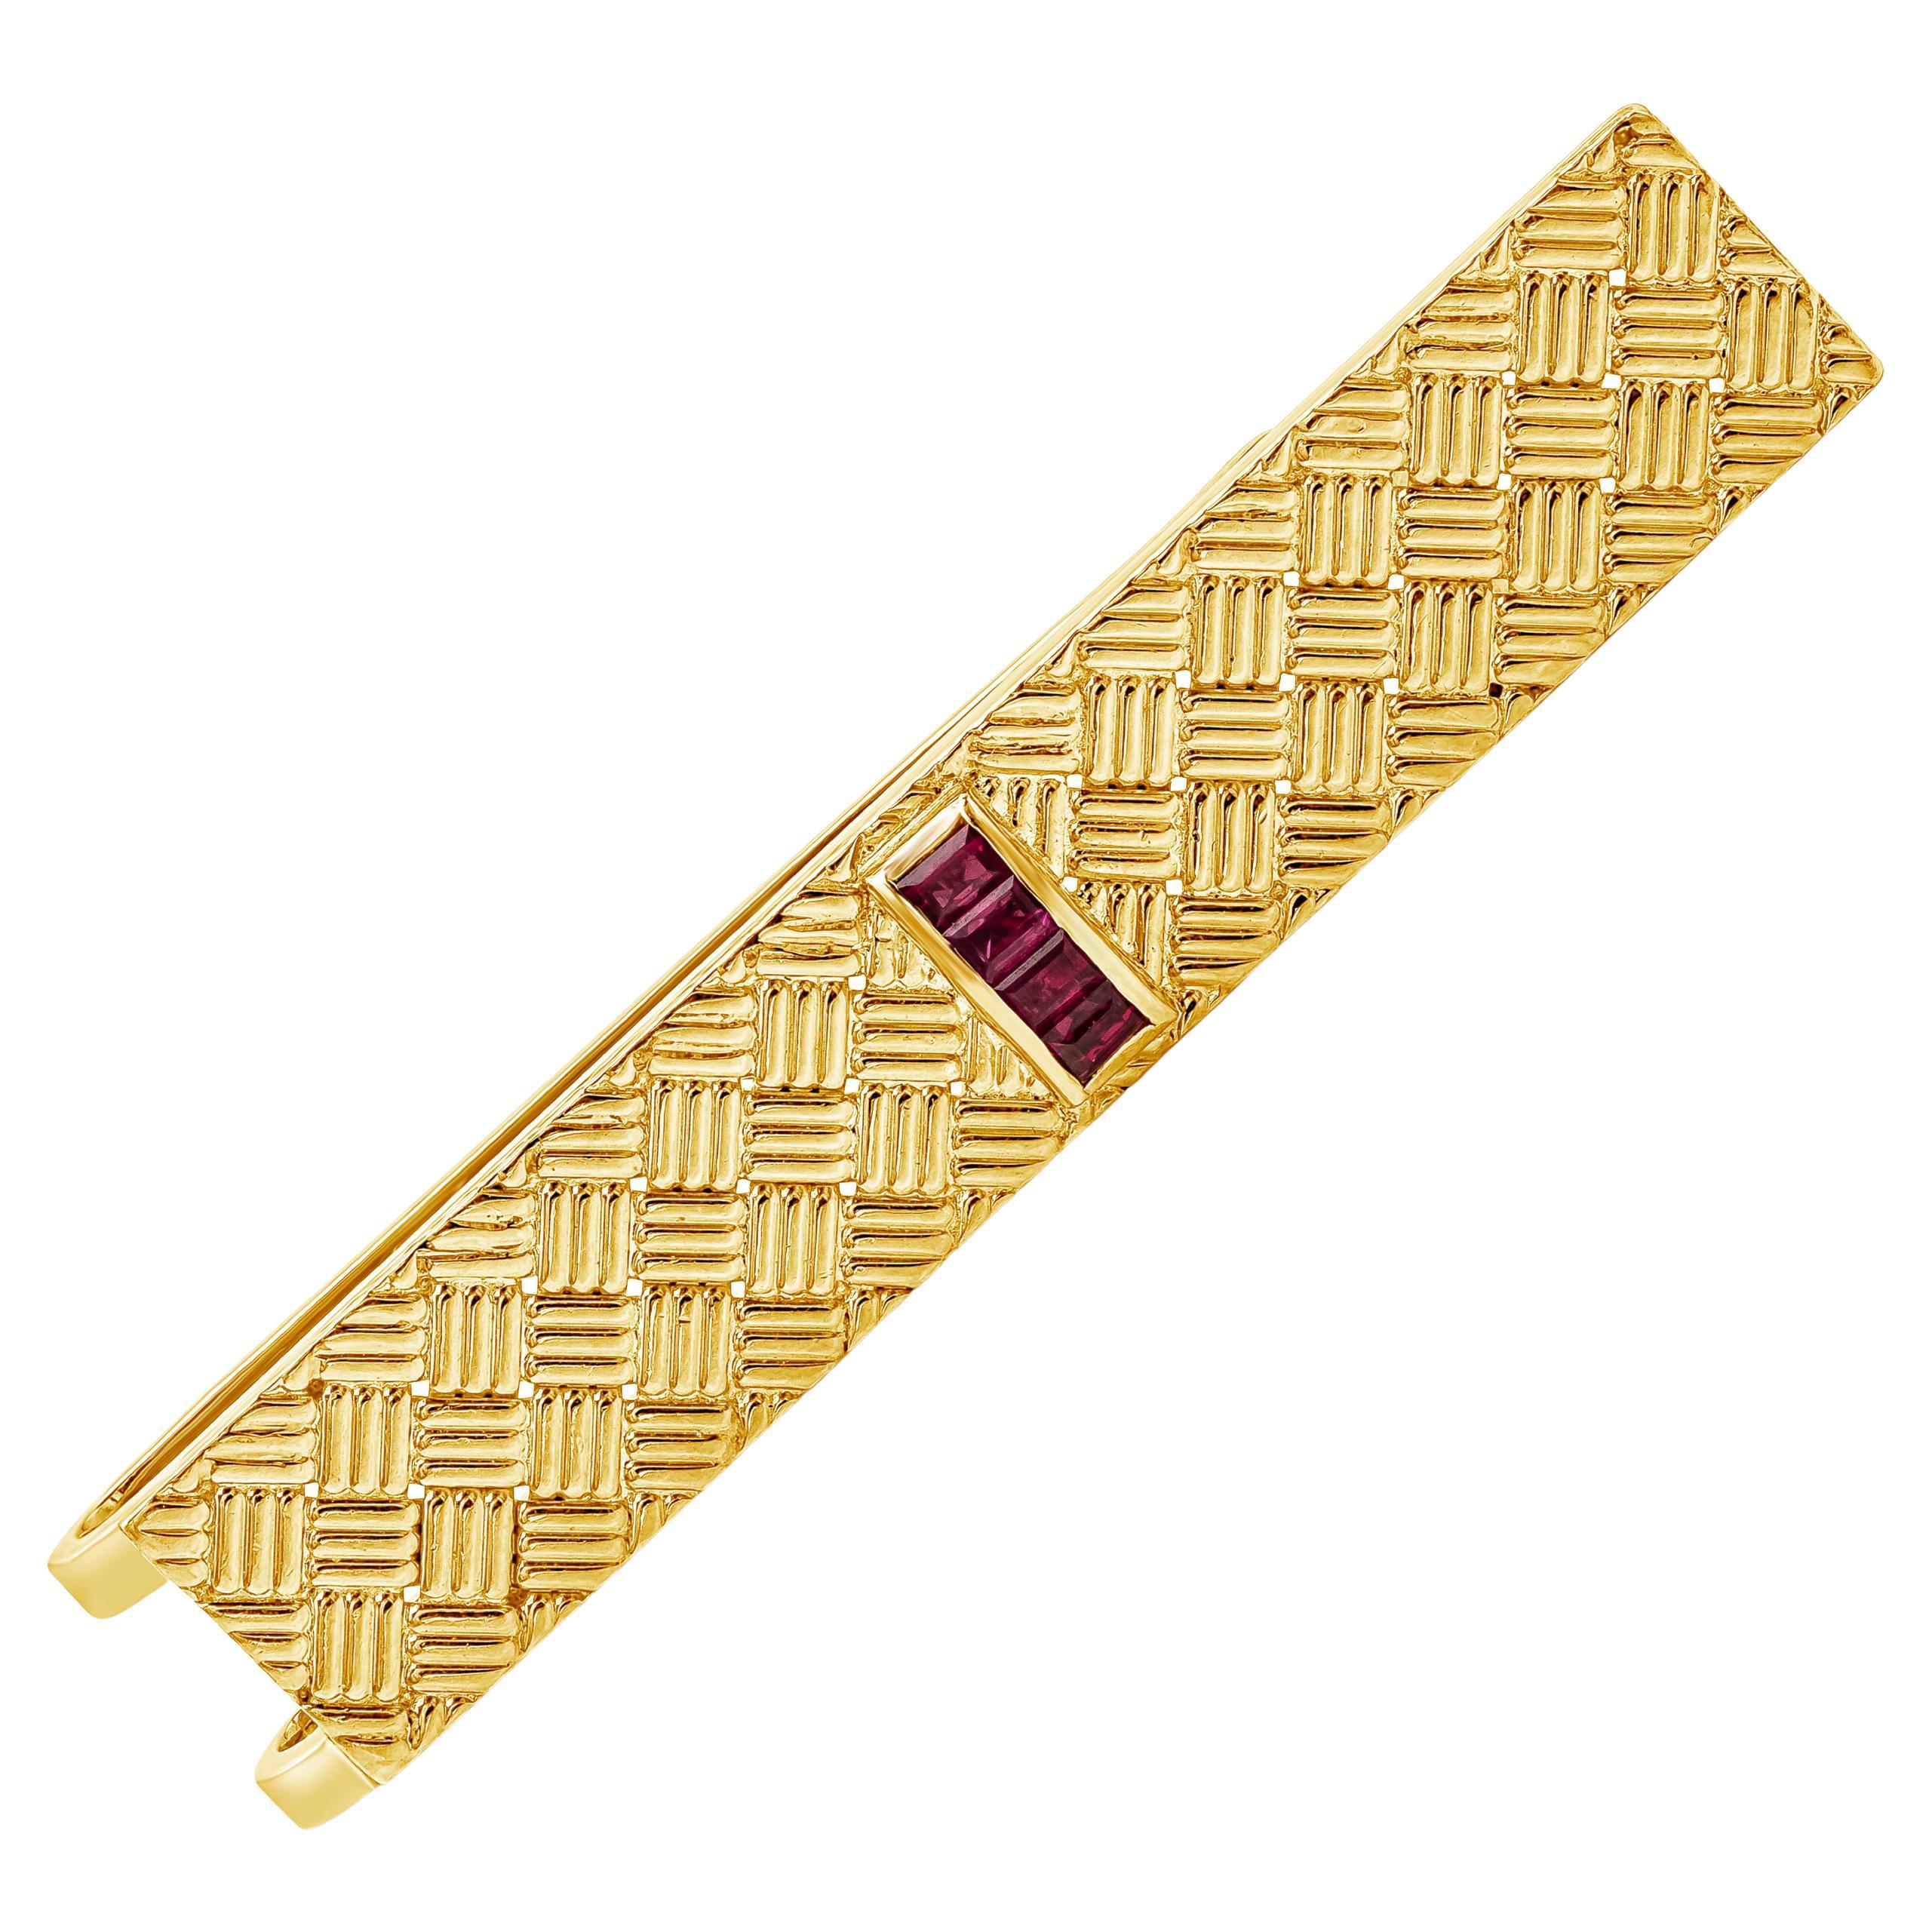 Tiffany & Co., pince à cravate en or jaune 18 carats avec motif tissé en rubis de 0,35 carat